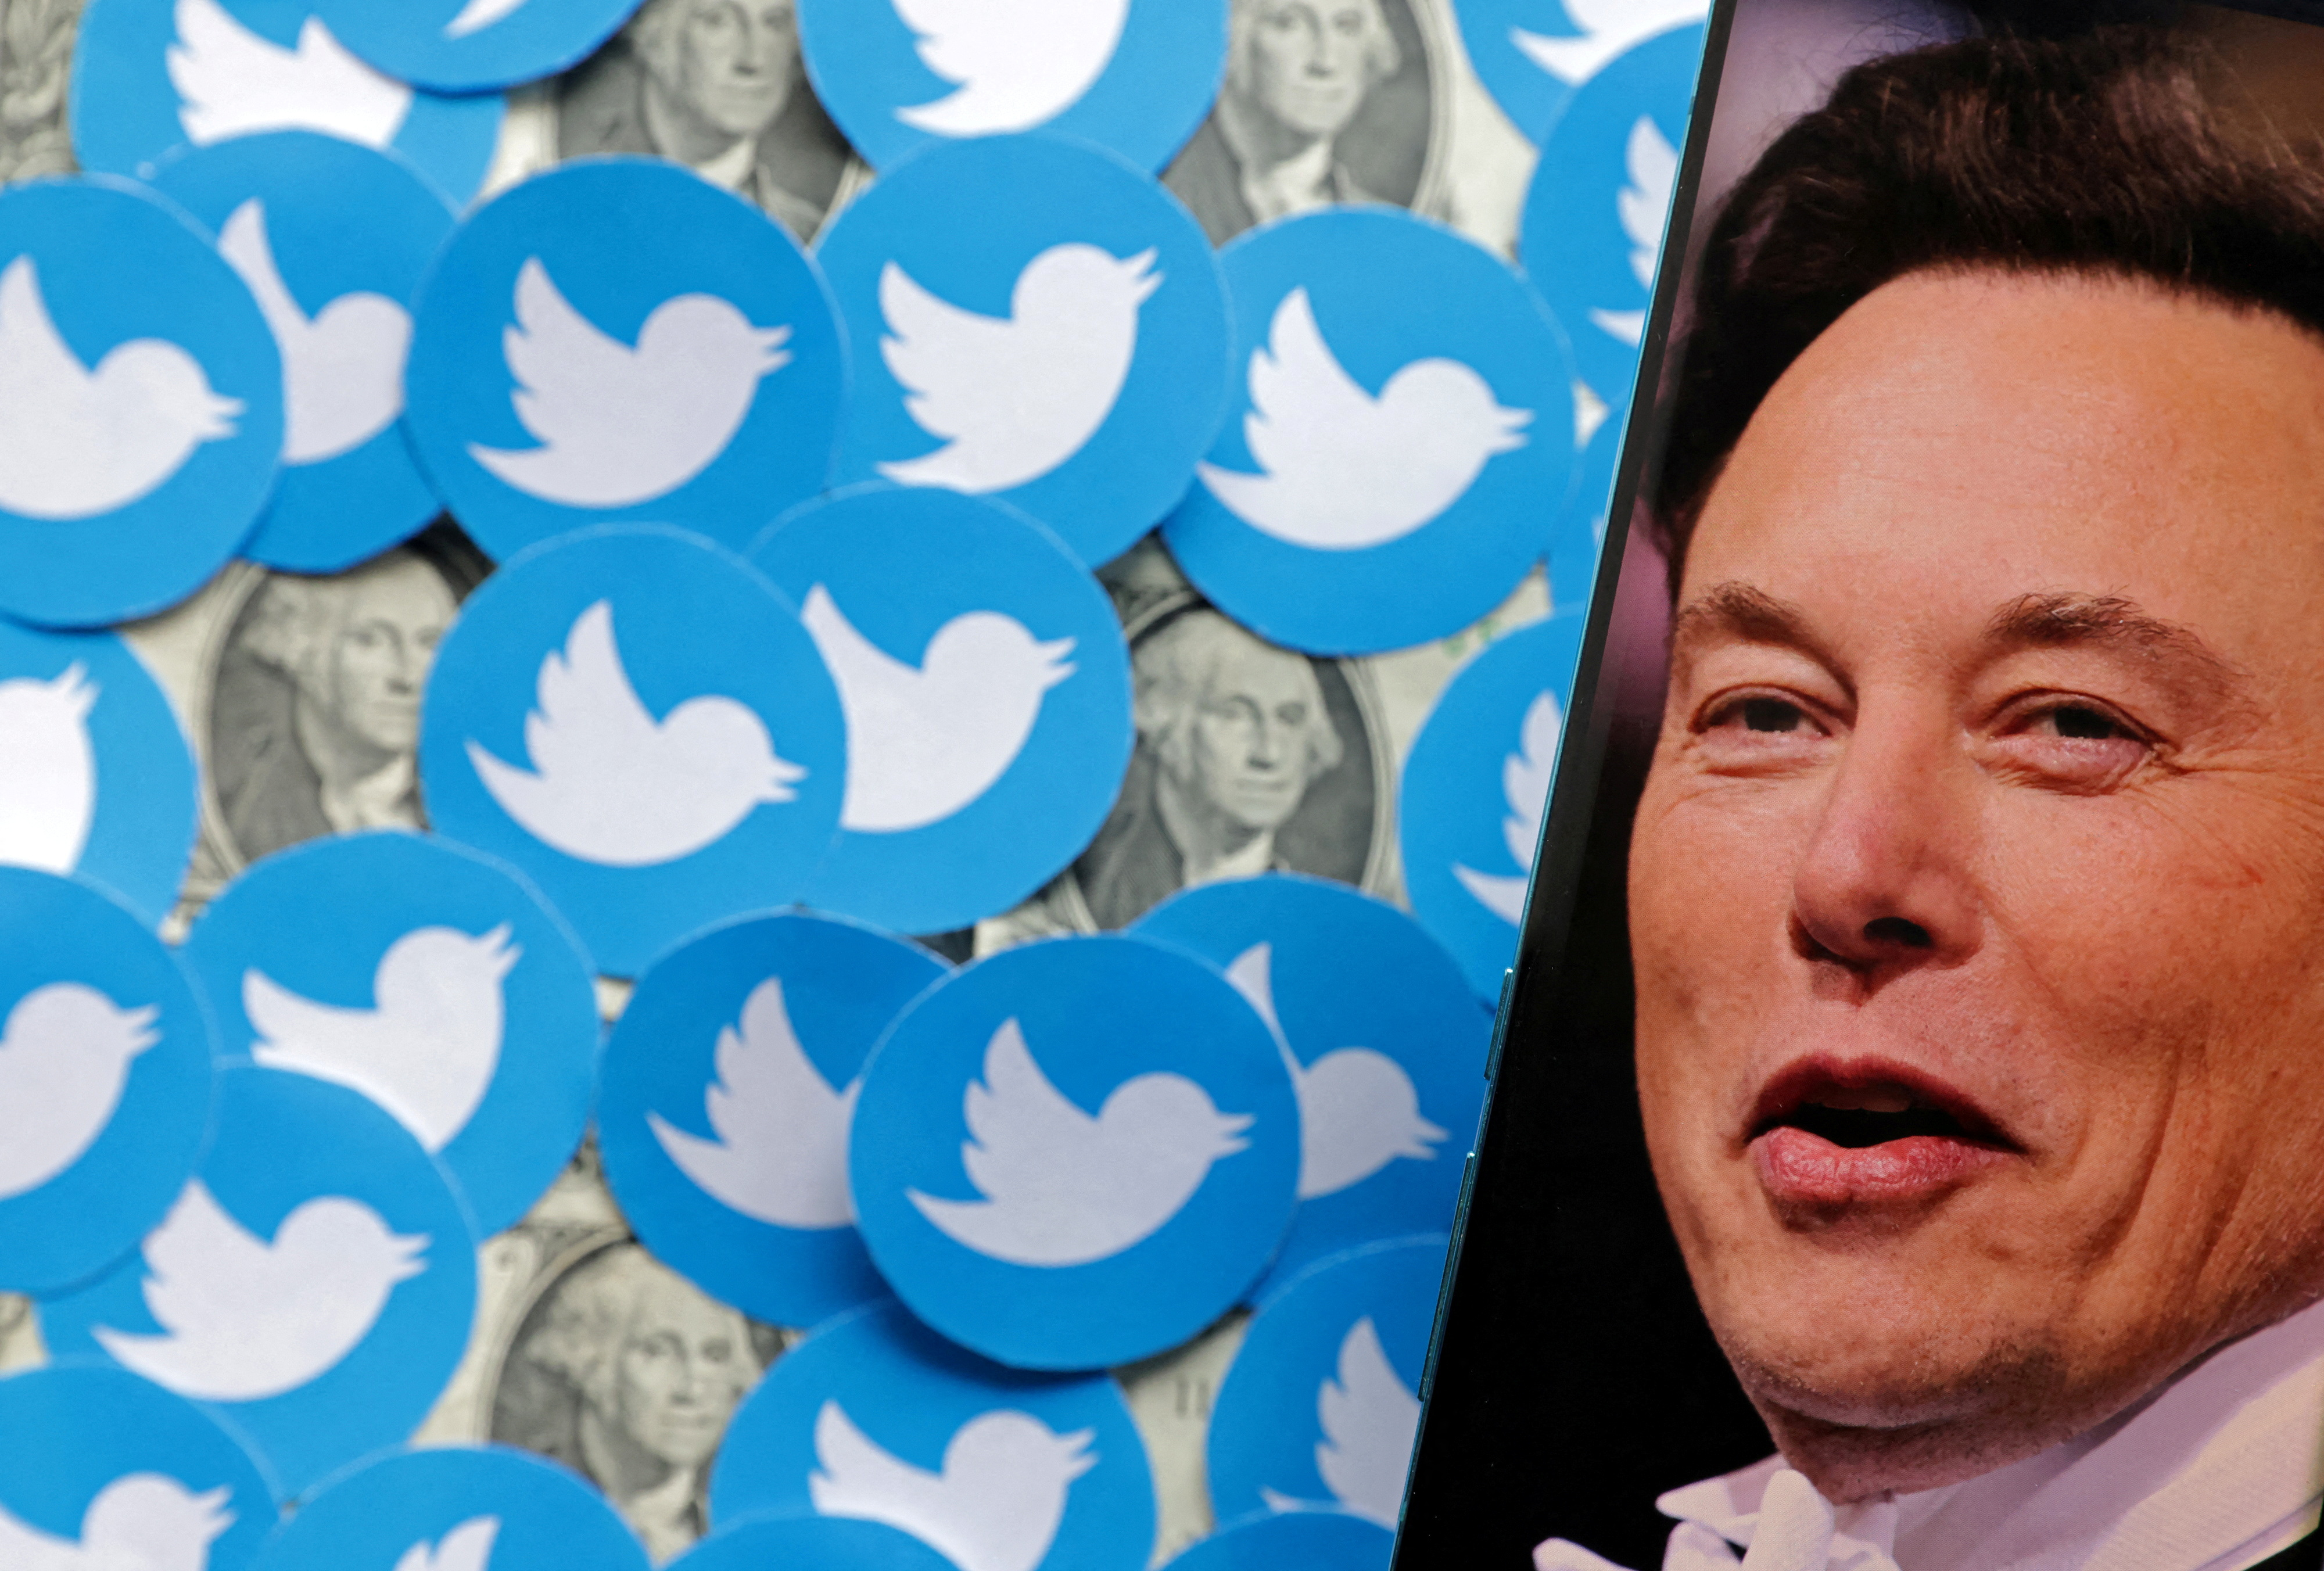 Elon Musk compró Twitter: paso a paso, cómo fue la batalla que llevó al hombre más rico del mundo a hacerse con la red social